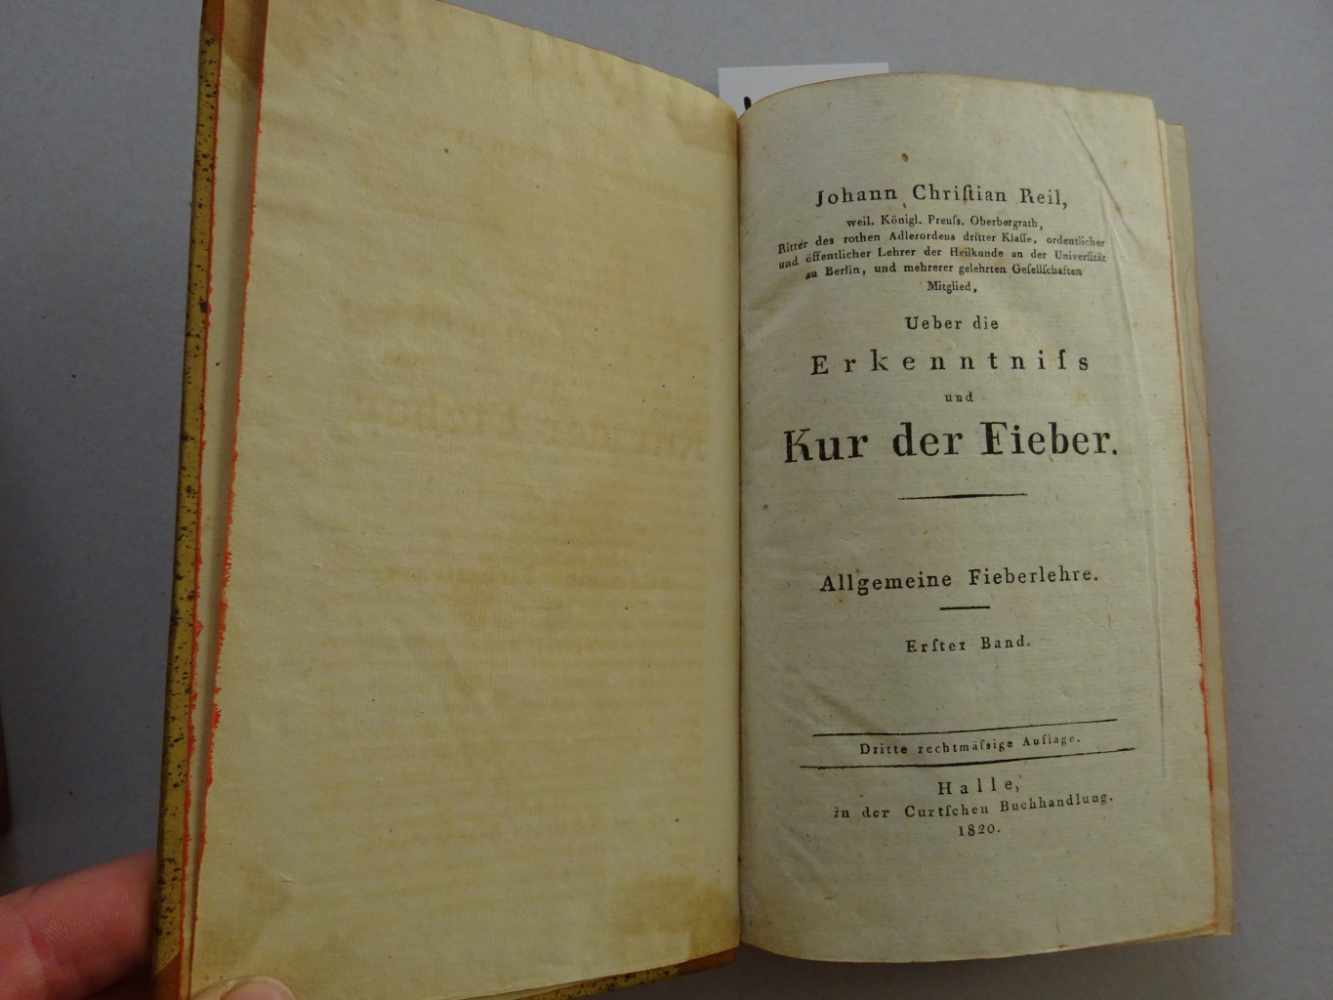 Reil, J.C.Ueber die Erkenntnis und Kur der Fieber. Mischauflage. 5 Bde. Halle, Curt, 1815 bzw. - Image 2 of 4